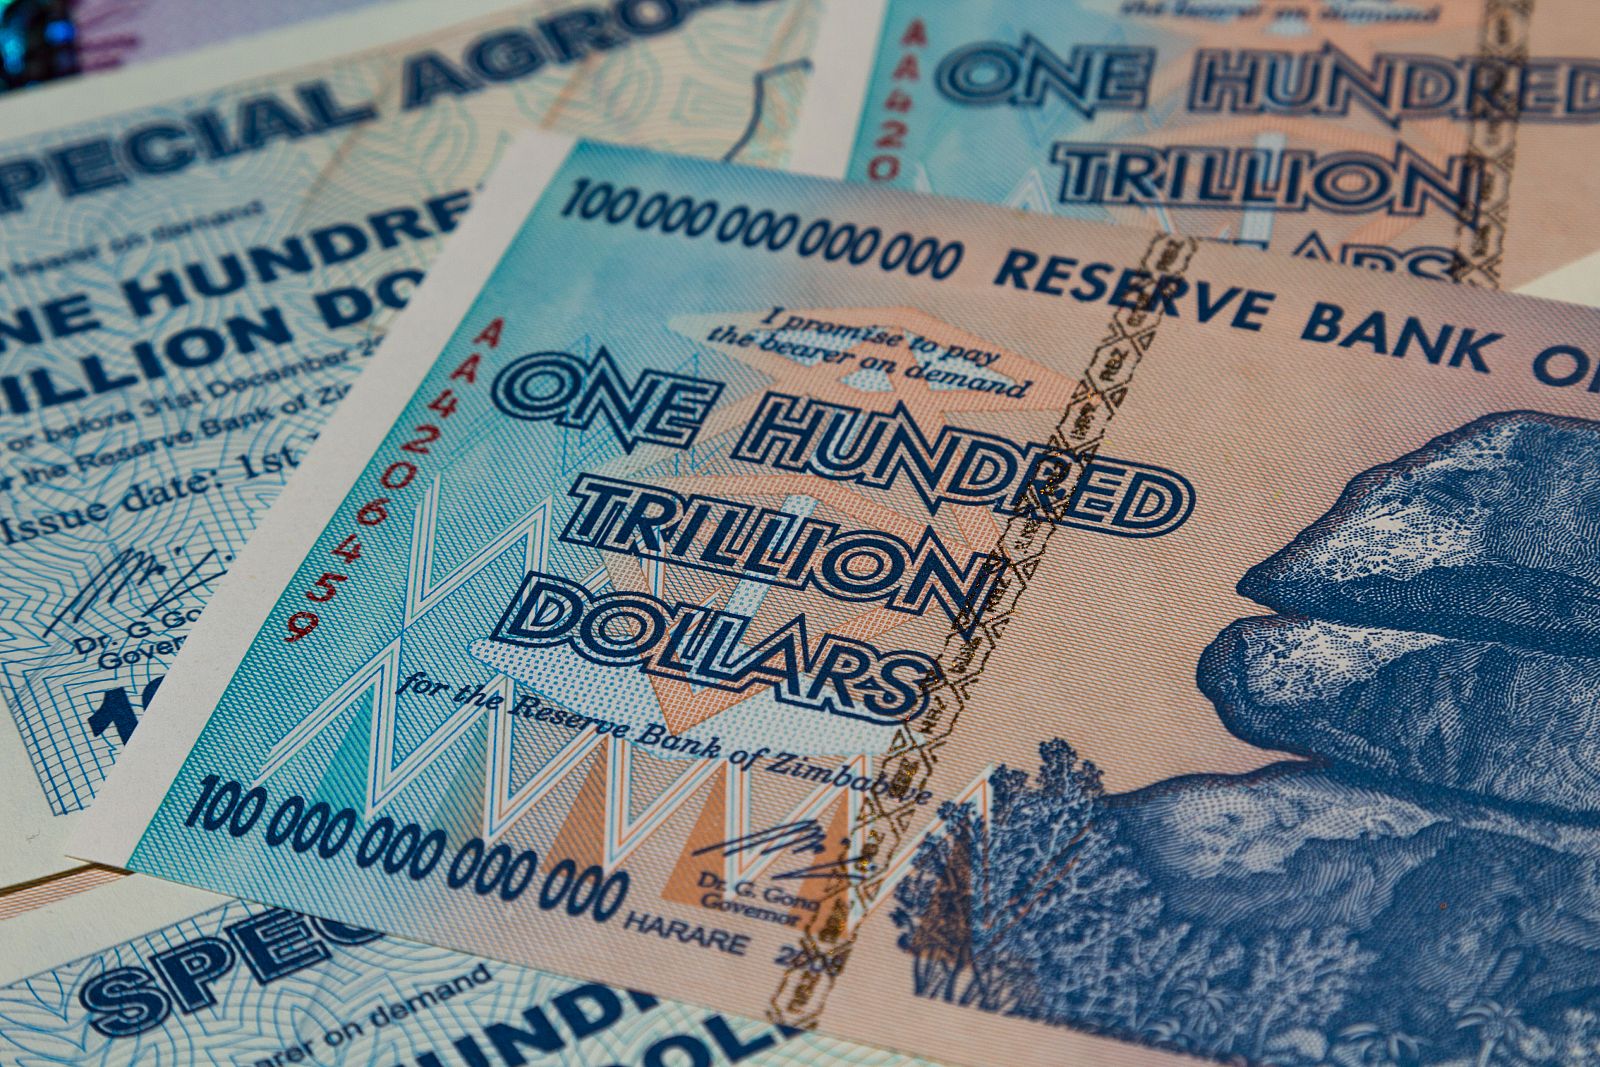 Billetes de cien billones de dólares zimbabuenses